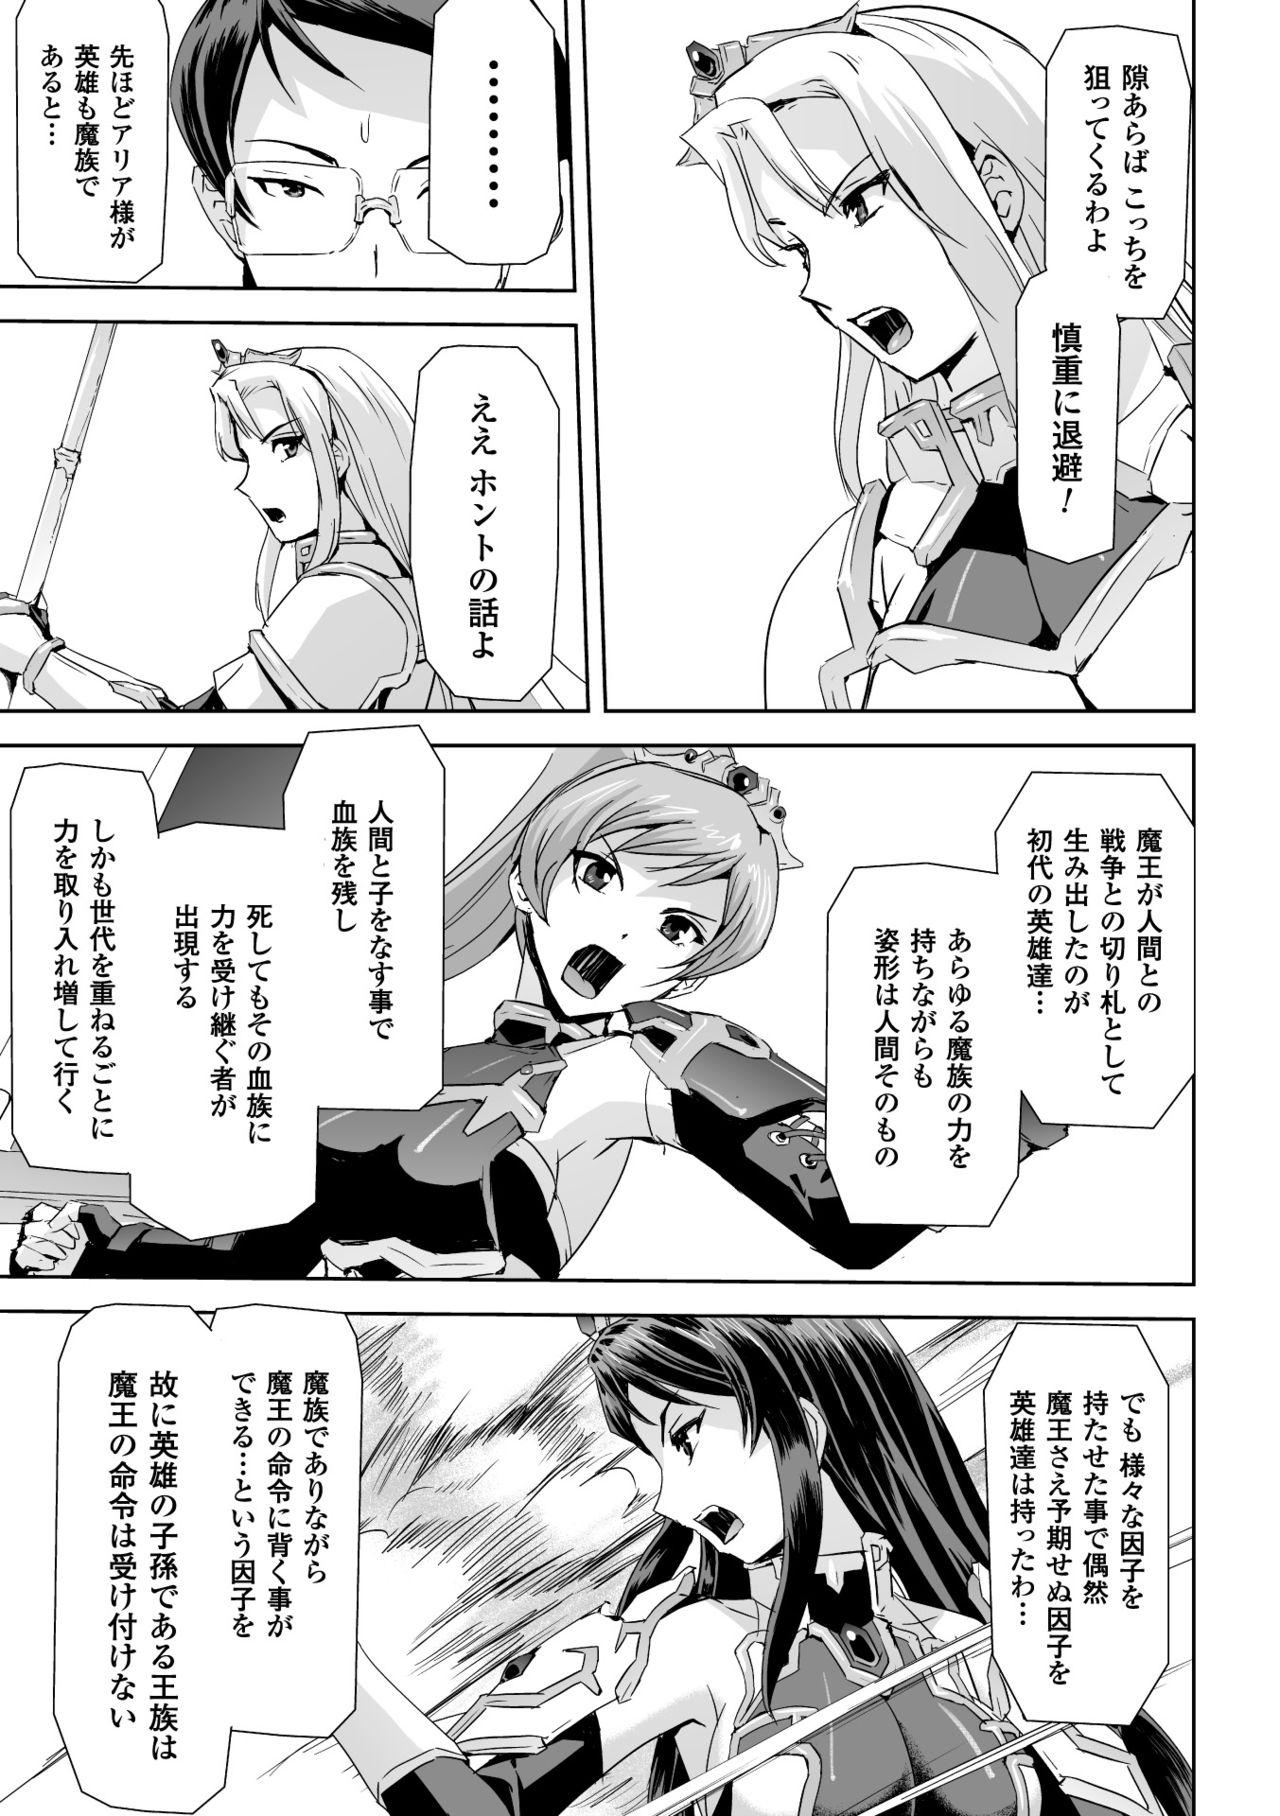 Seigi no Heroine Kangoku File Vol. 2 52